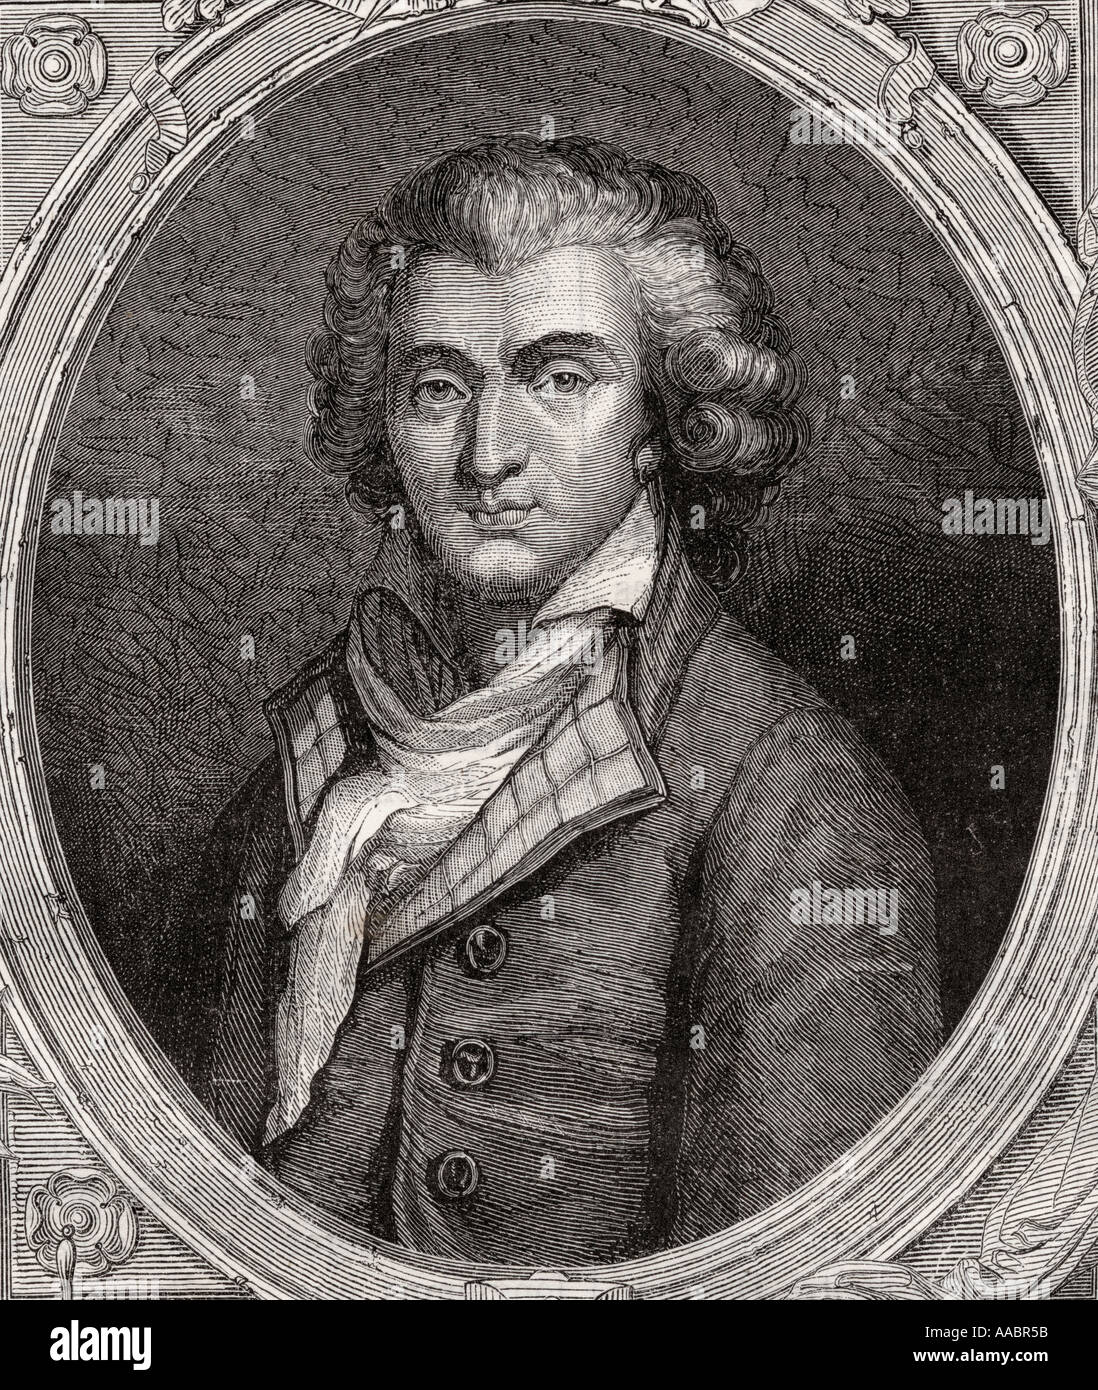 Philippe Francois Nazaire Fabre d'Eglantine, 1755 - 1794. Attore francese, Drammaturgo, poeta e politico della Rivoluzione Francese. Foto Stock